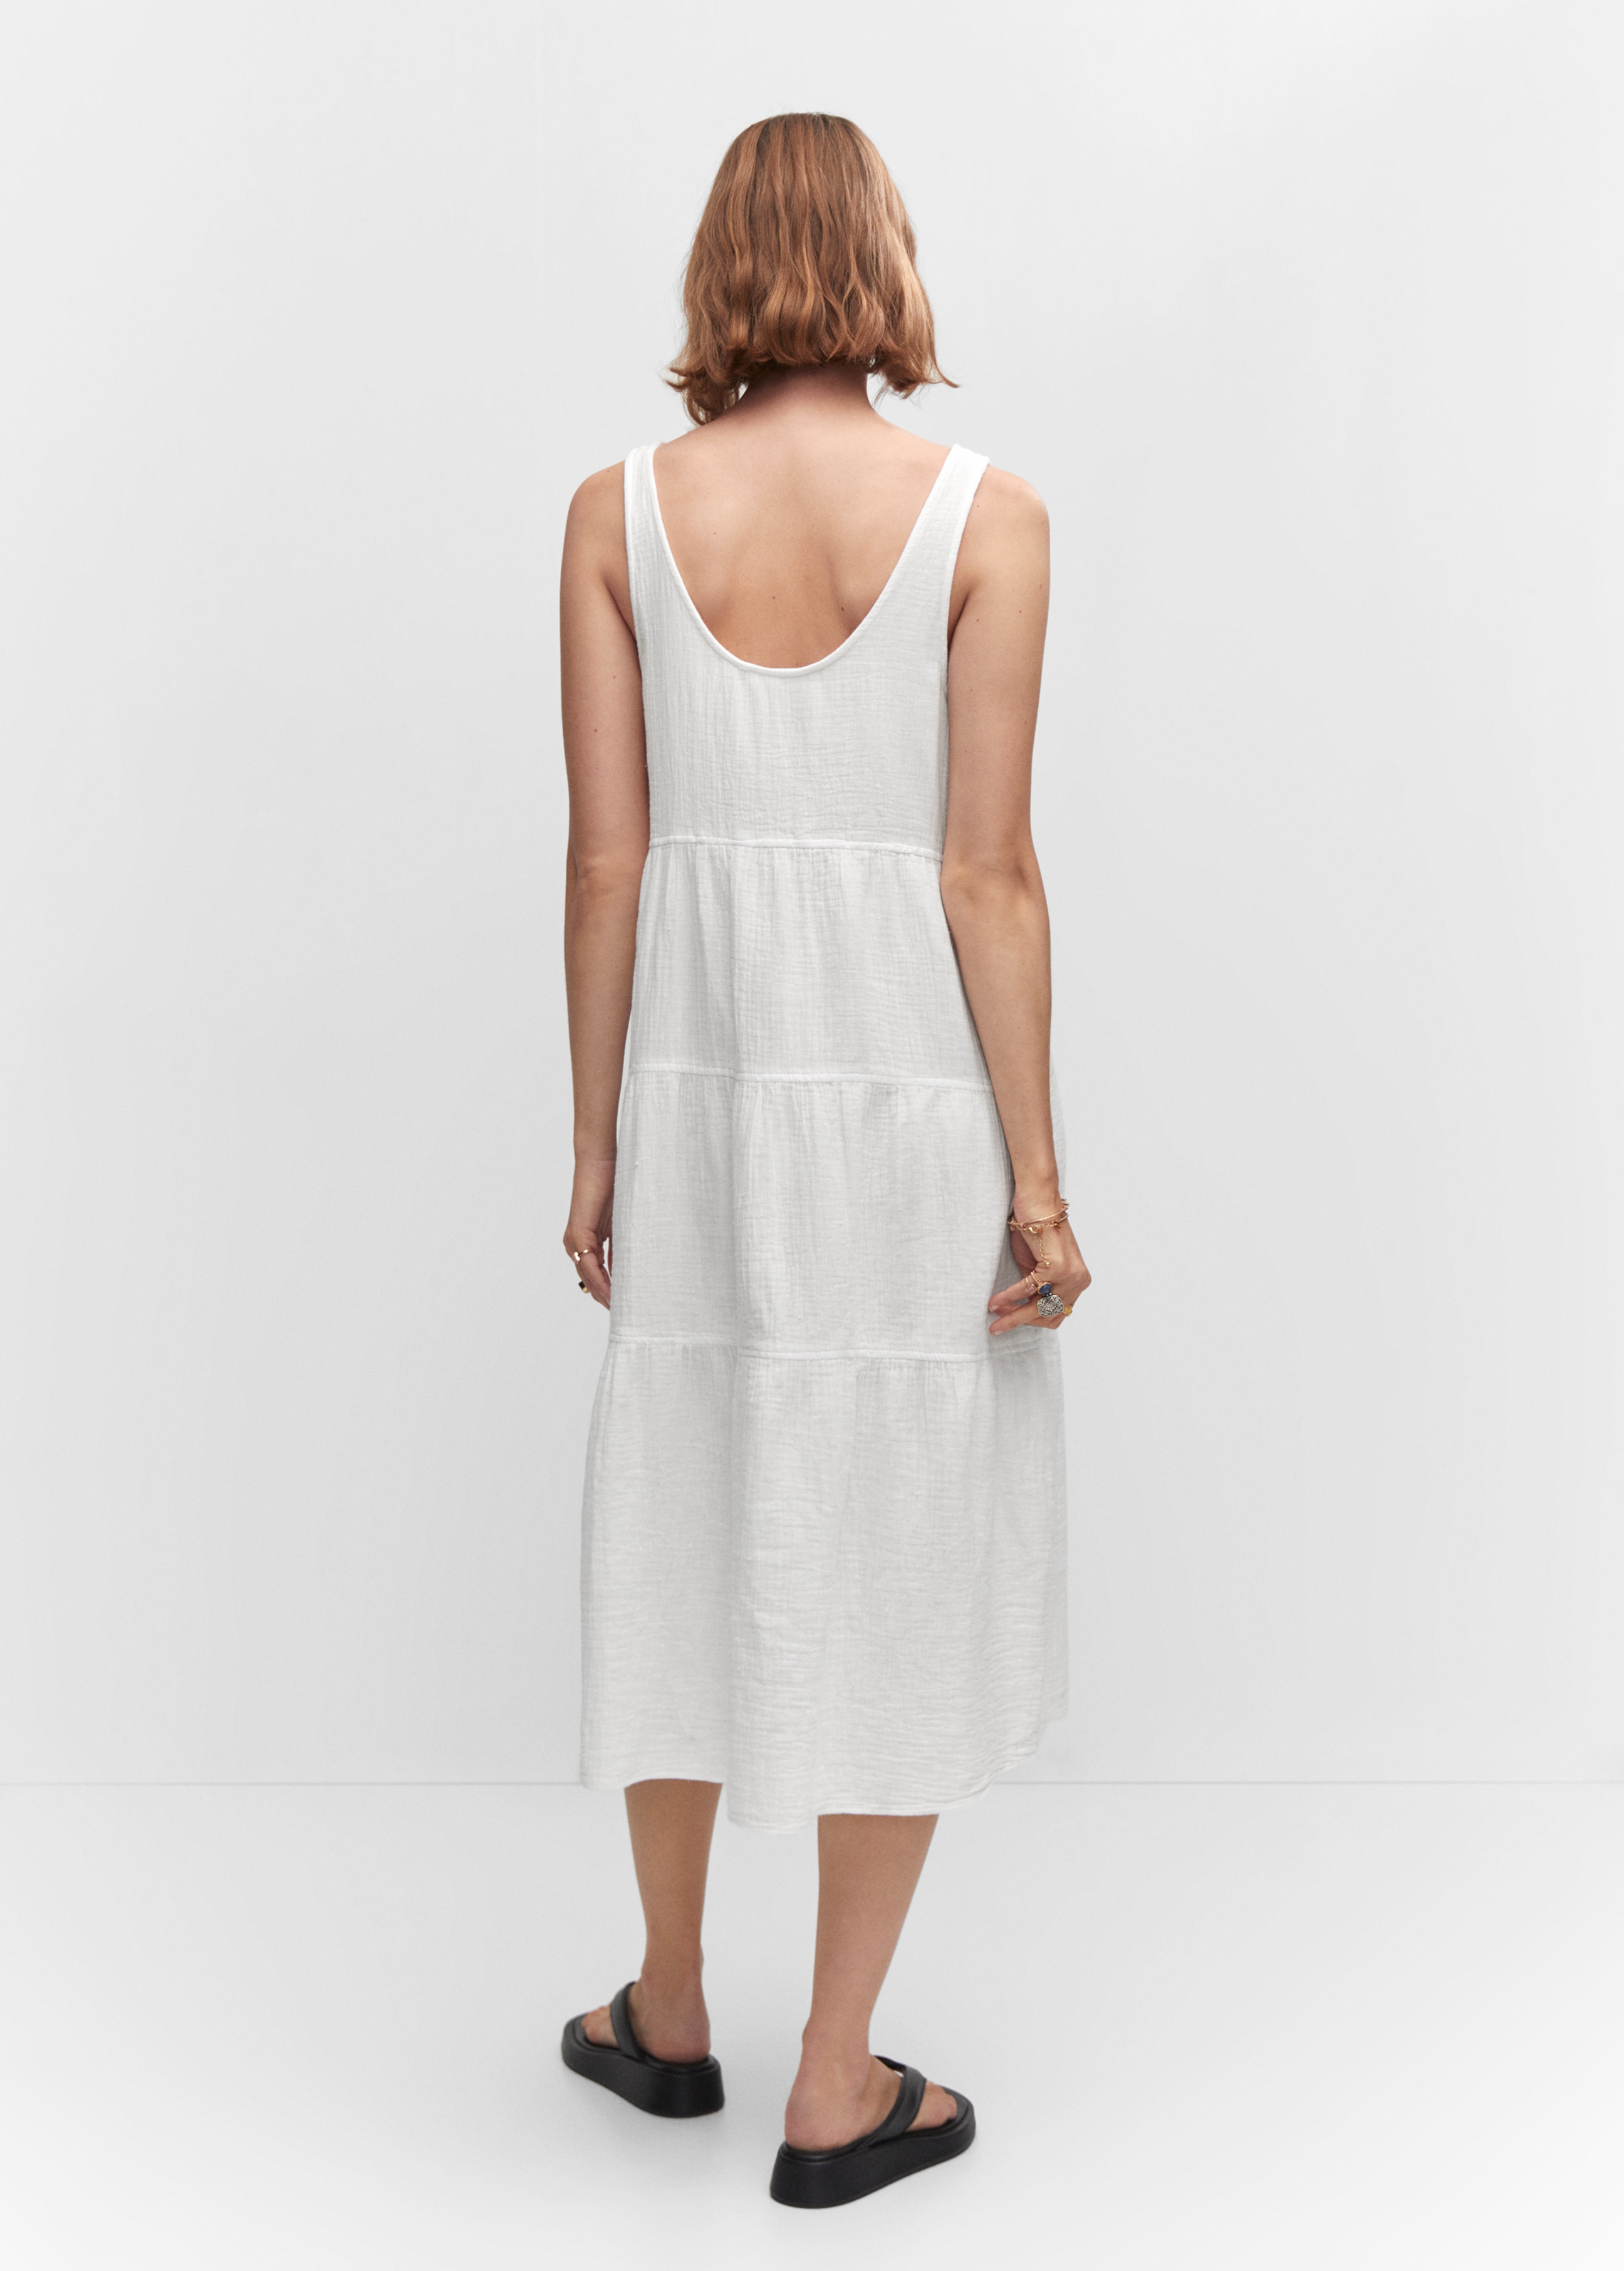 Φόρεμα βαμβάκι βολάν - Πίσω όψη προϊόντος